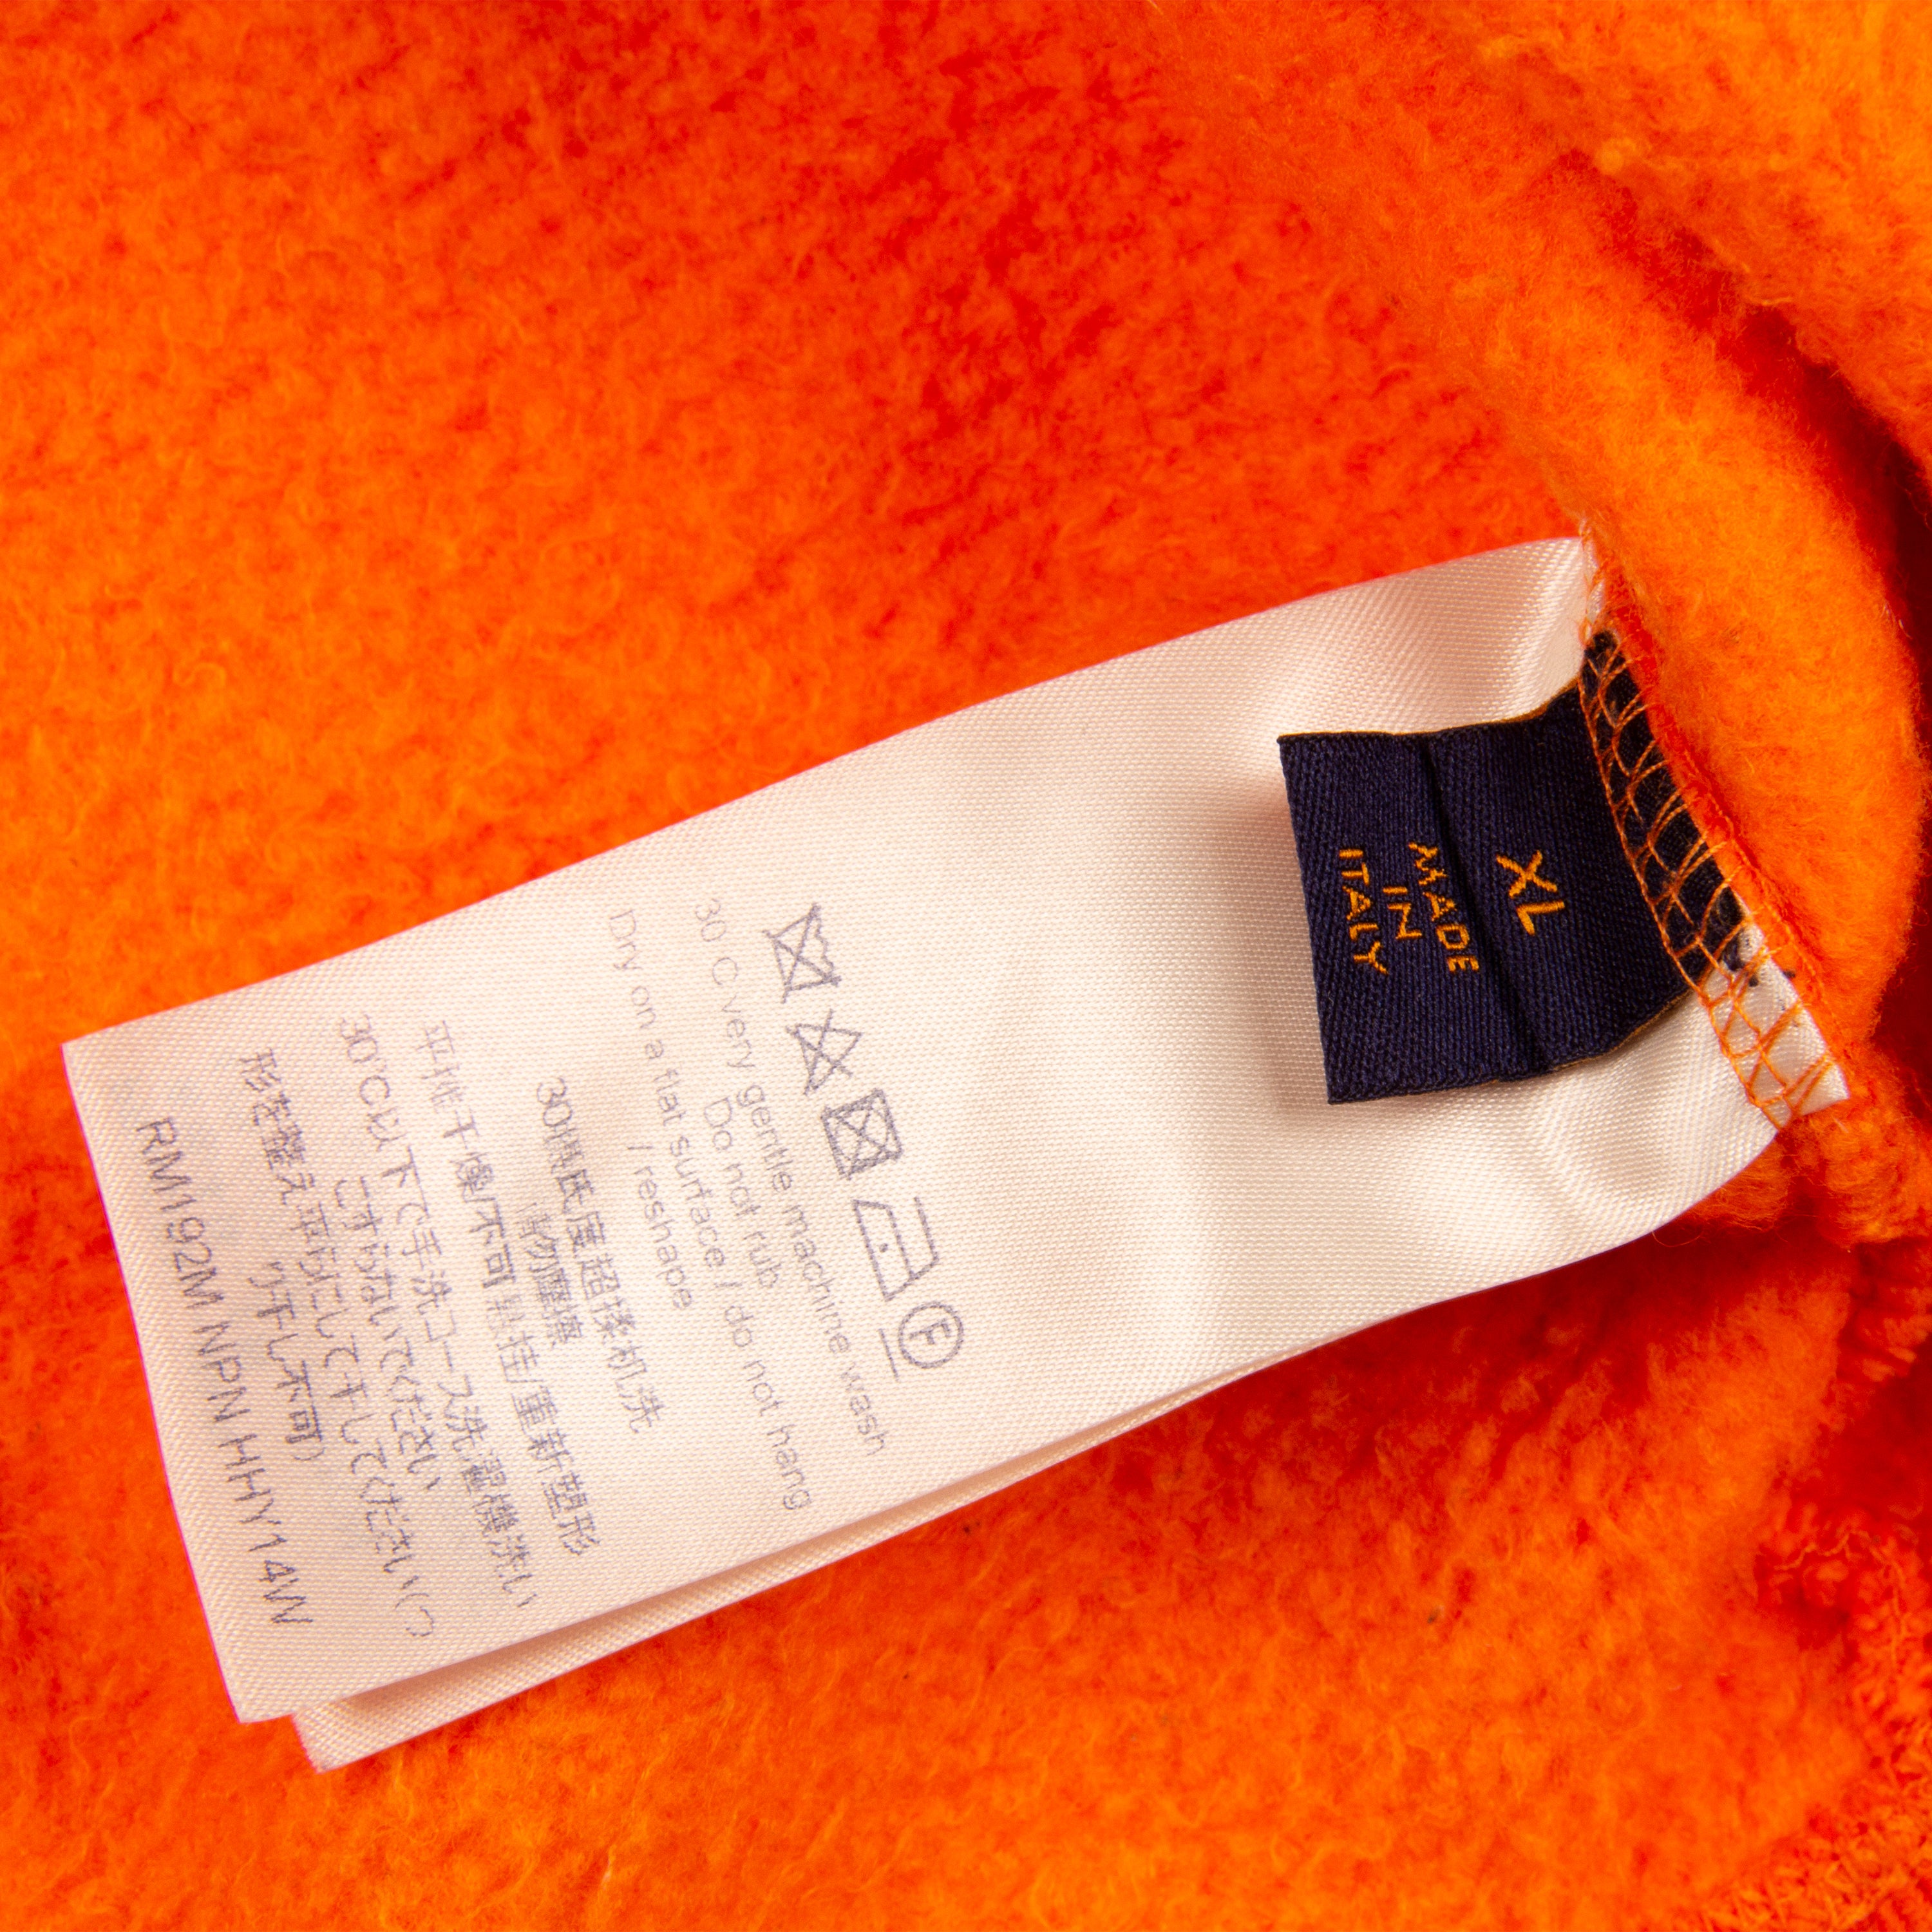 Louis Vuitton Lv Orange Monogram Sweater Shirt